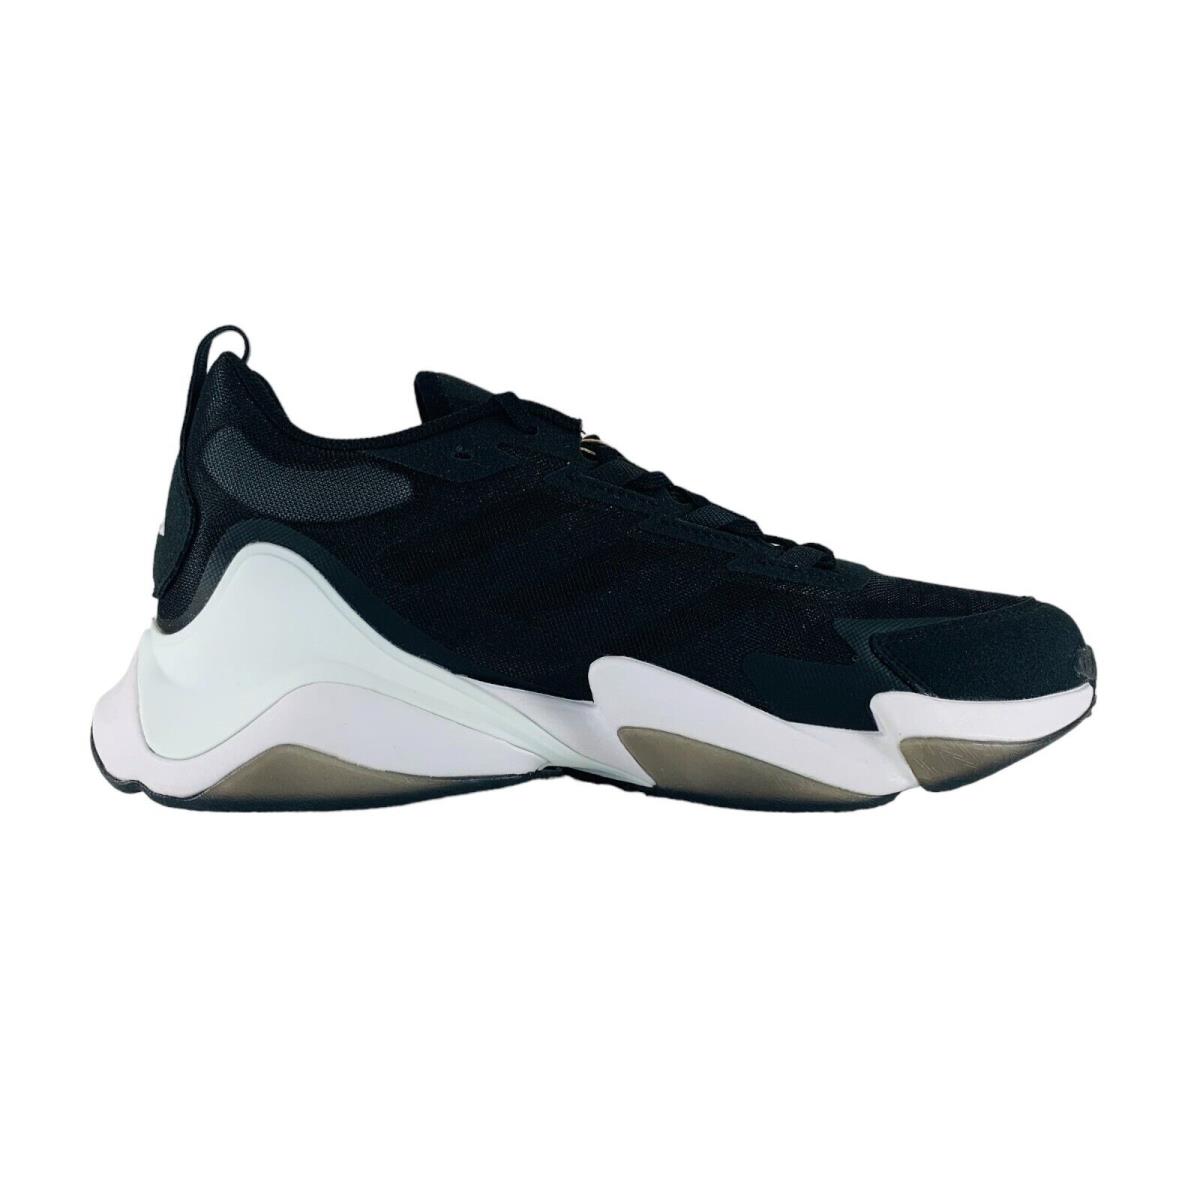 Adidas Impact Flx II Turf Black Football Training Shoes IE9379 Men`s Sizes - Black